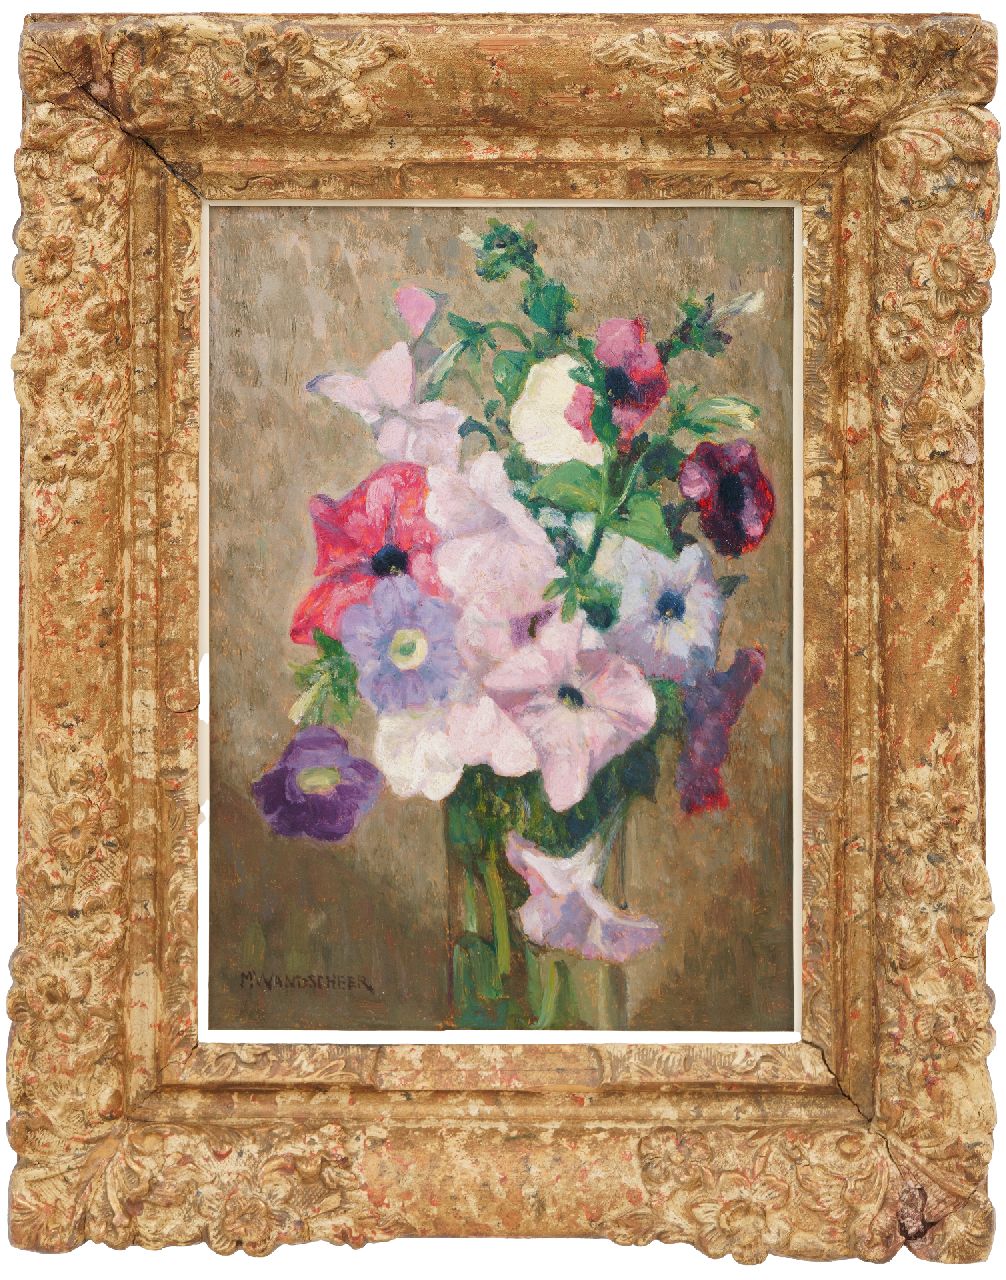 Wandscheer M.W.  | Maria Wilhelmina 'Marie' Wandscheer | Schilderijen te koop aangeboden | Bloemstilleven met petunia's, olieverf op paneel 32,2 x 23,6 cm, gesigneerd linksonder